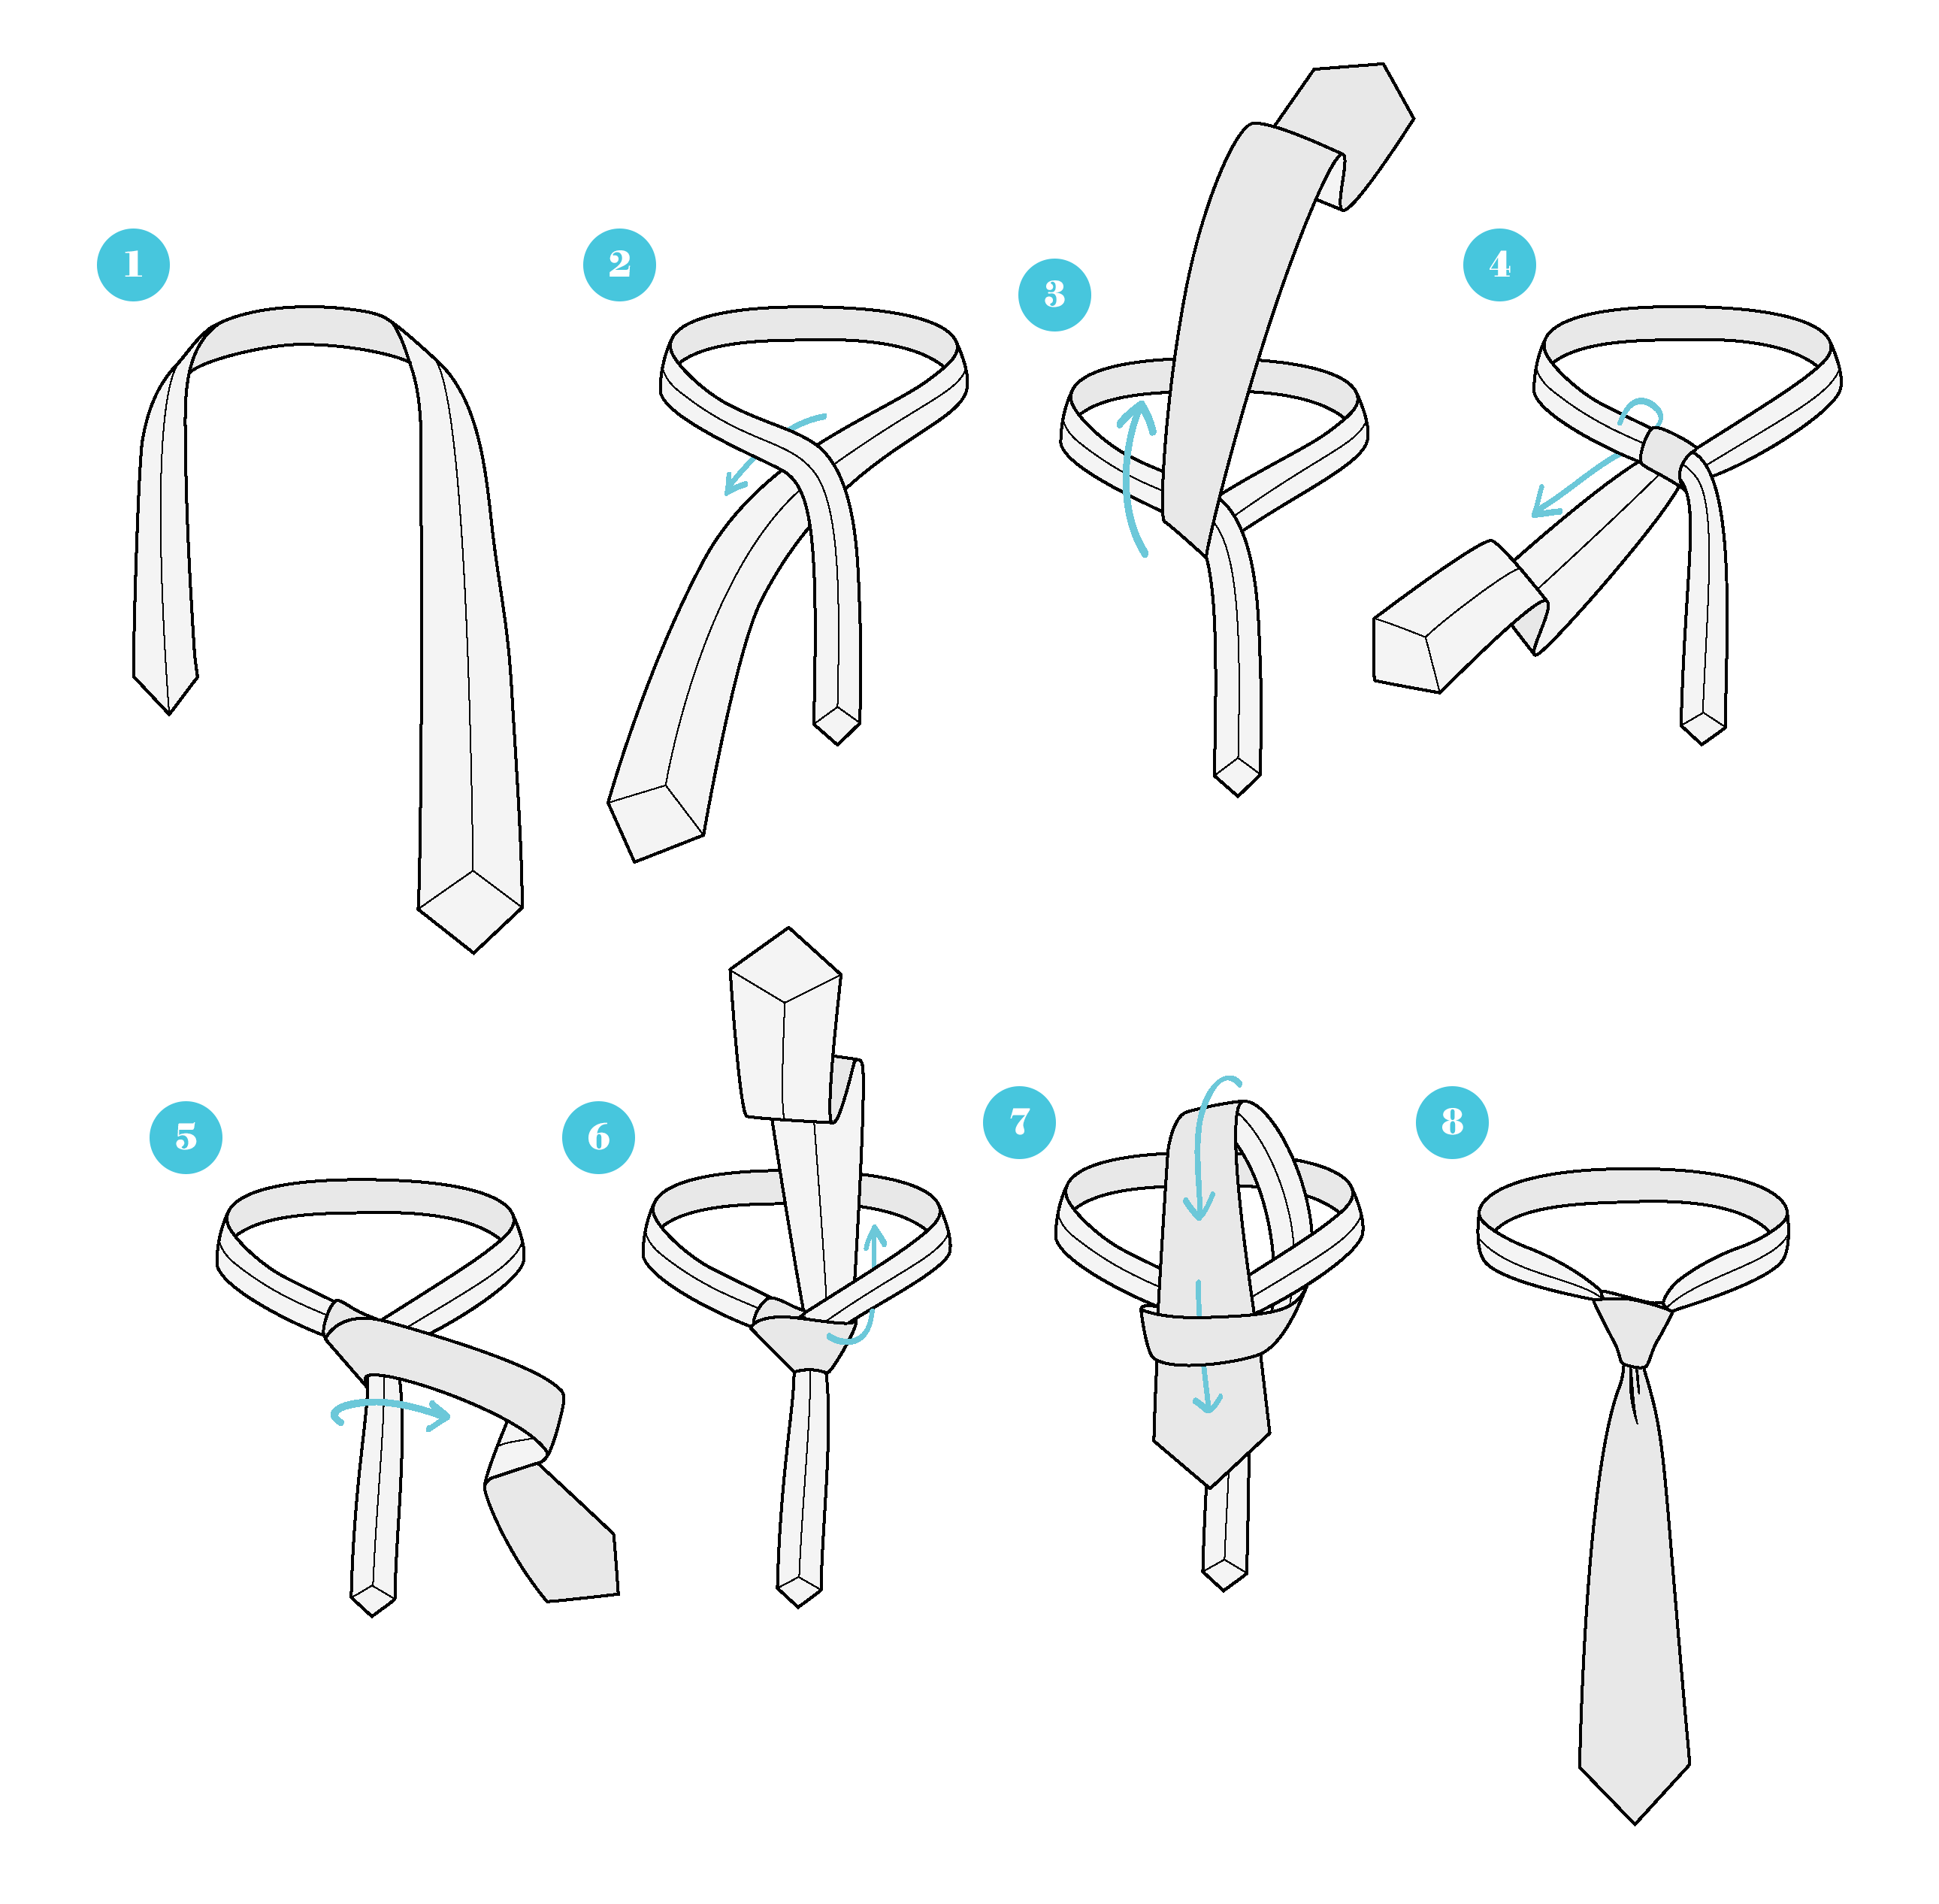 Как завязывать галстук быстро и красиво: правильная фото и видео инструкция